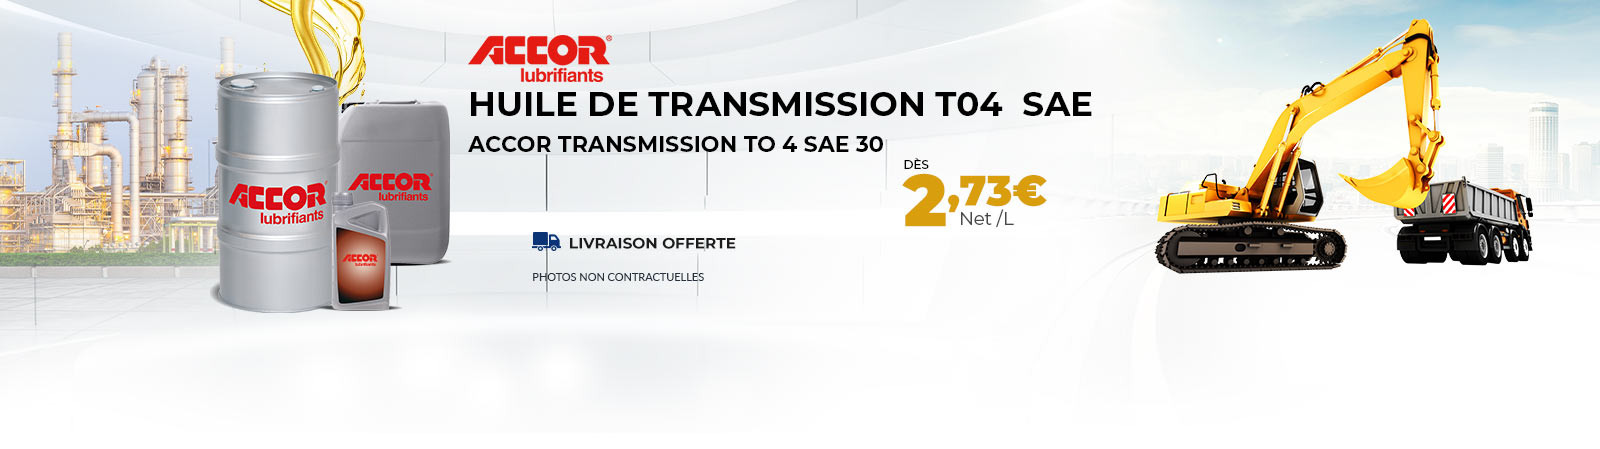 Huile de Transmission T04  SAE 30 dès 2.73 €/l PORT OFFERT